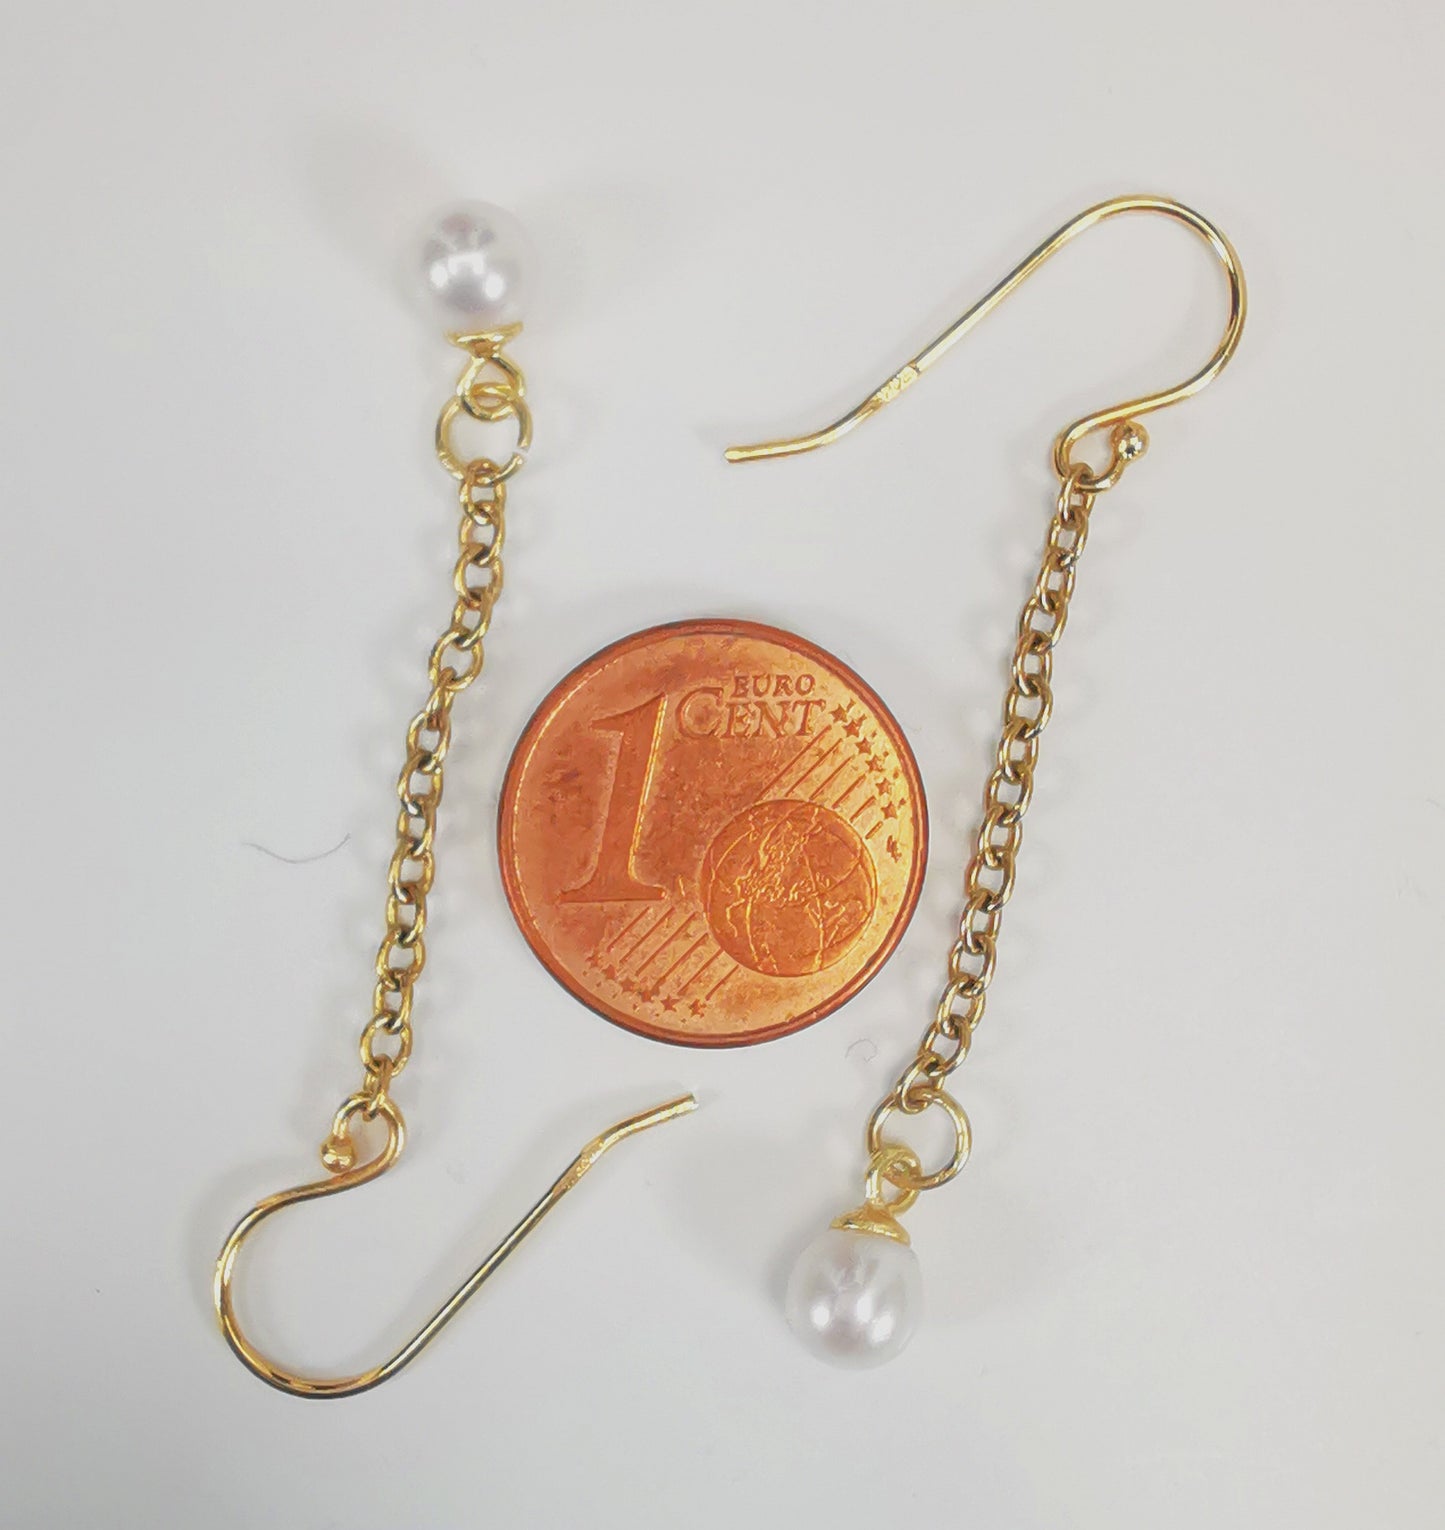 Boucles d'oreilles perles de culture blanches rondes 5mm sur pendants et chaînes plaqués or. Présentées cote à cote, têtes bèches, boucle de droite perle en haut, celle de droite perle en bas, sur fond blanc. Vue de dessus.